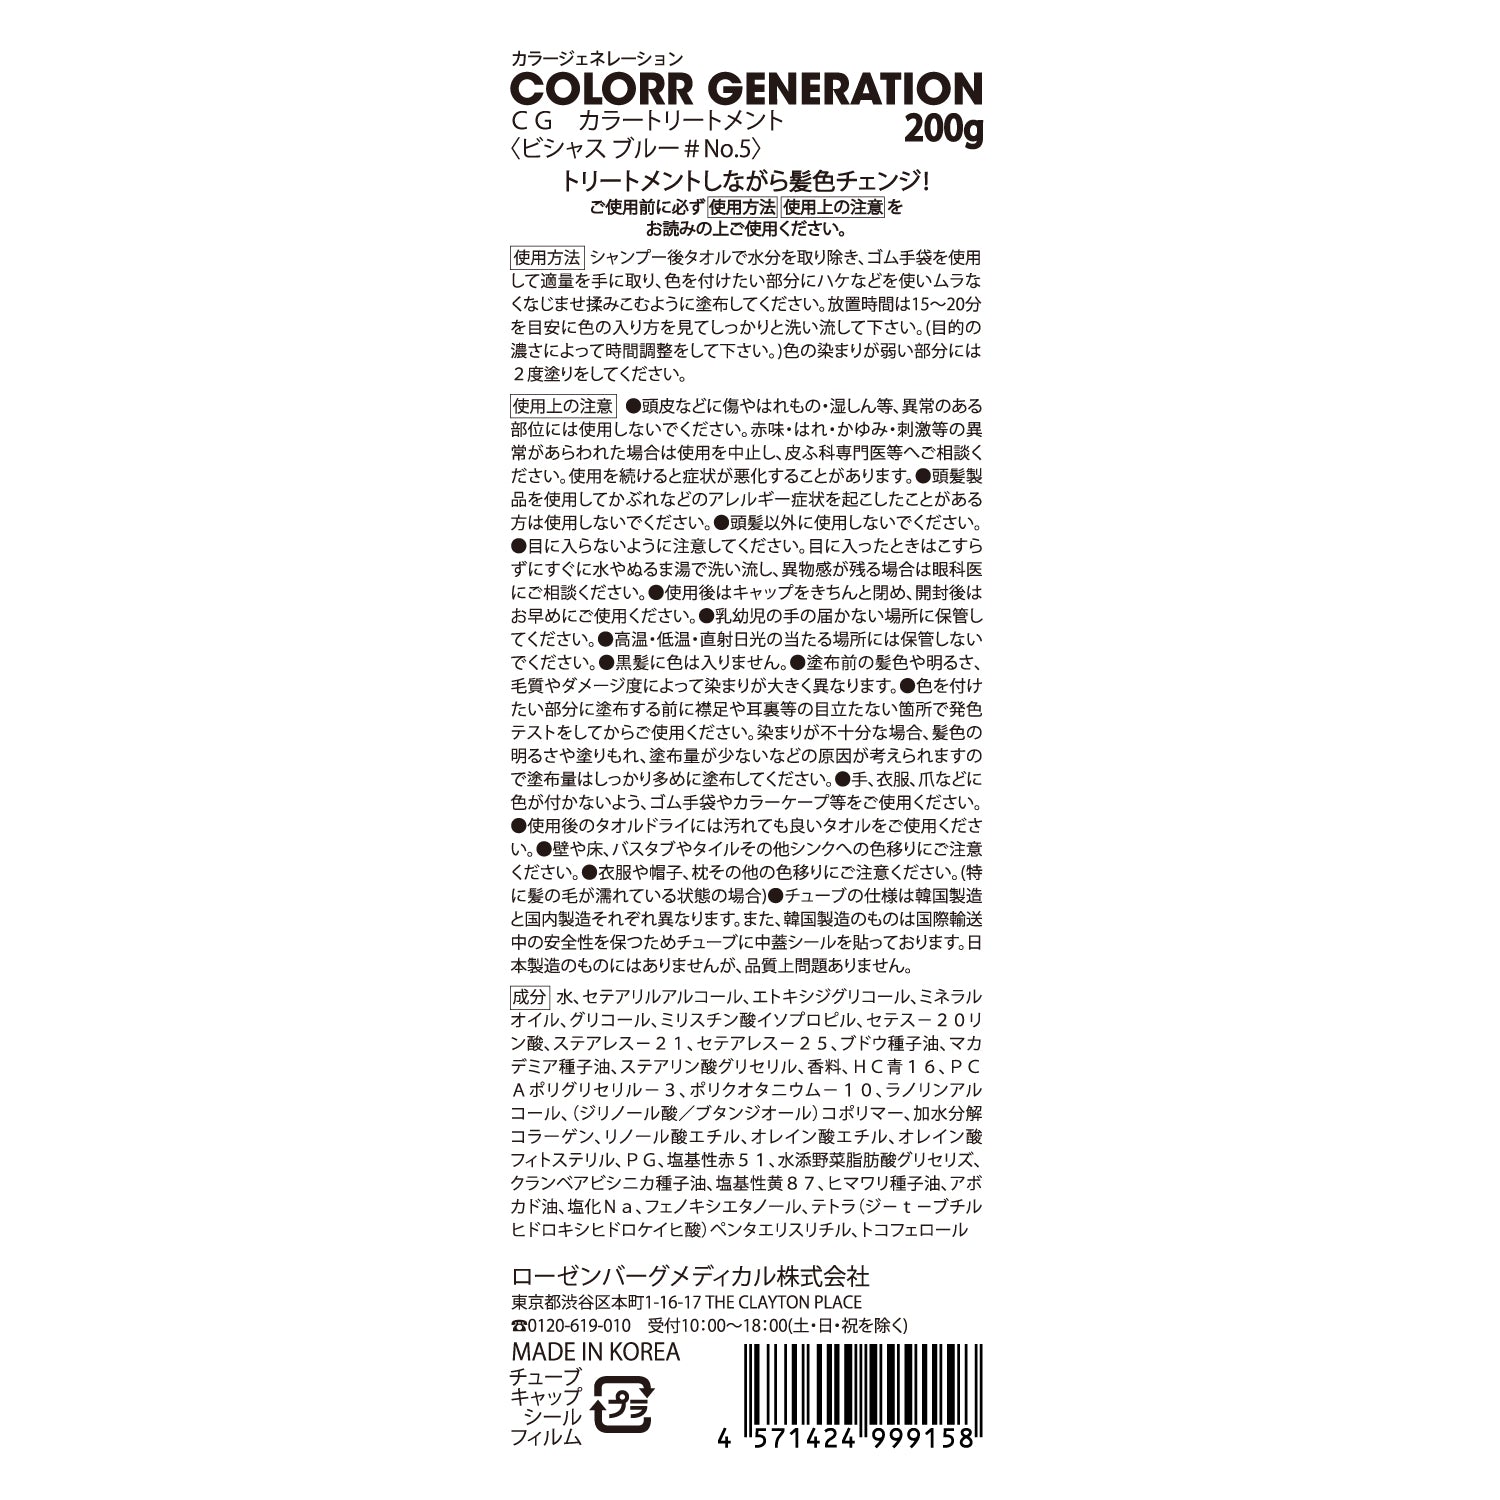 新感覚のカラーヘアクリーム　COLORR GENERATION VICIOUS BLUE＃No.5（ビシャス ブルー＃No.5)